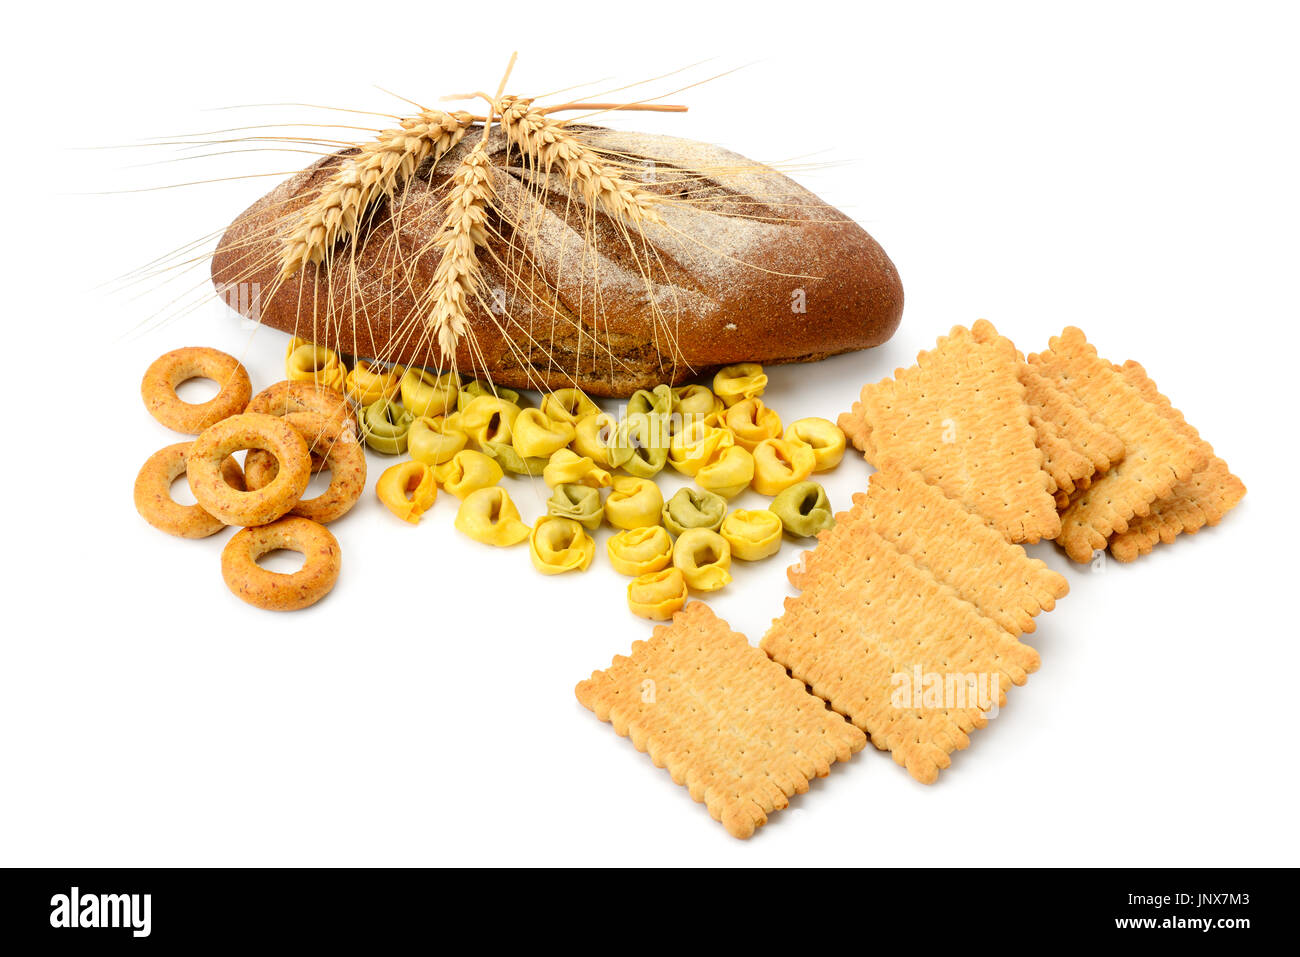 Weizen-Produkte isoliert auf weißem Hintergrund. Cookies, Ravioli, Bagels,  Brot, Ähren. Gesunde Ernährung Stockfotografie - Alamy